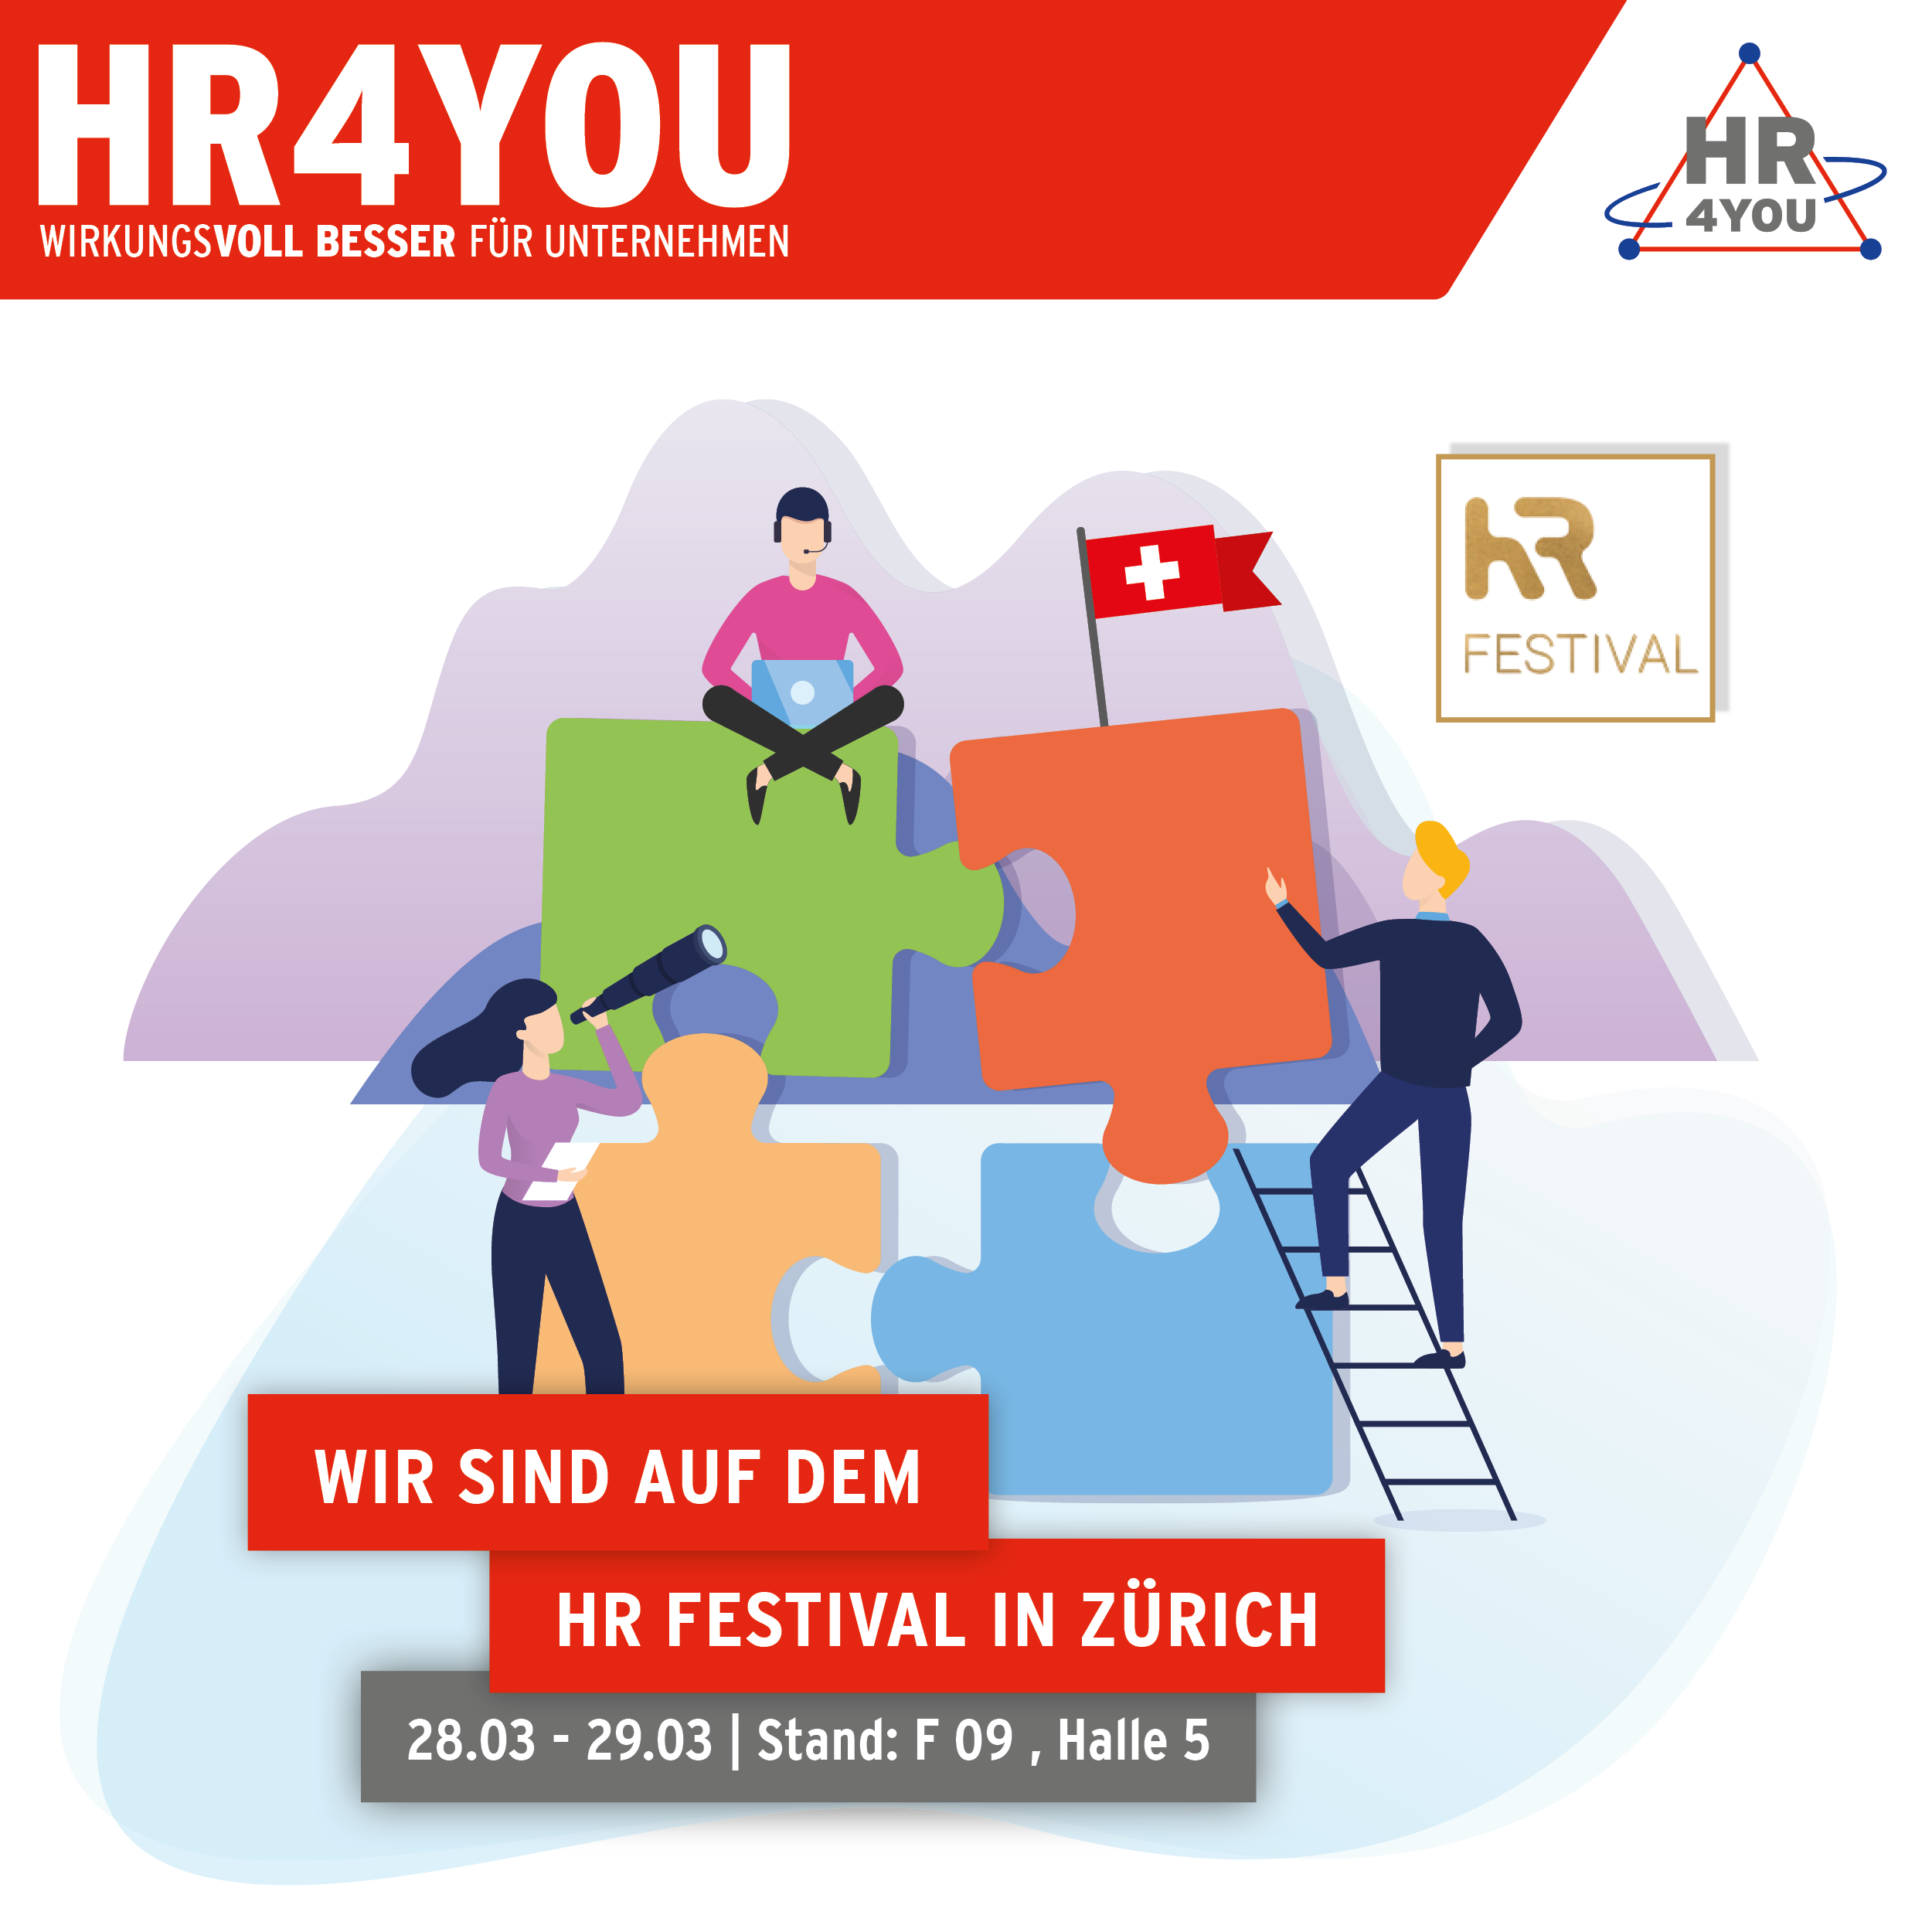 HR Festival in Zürich